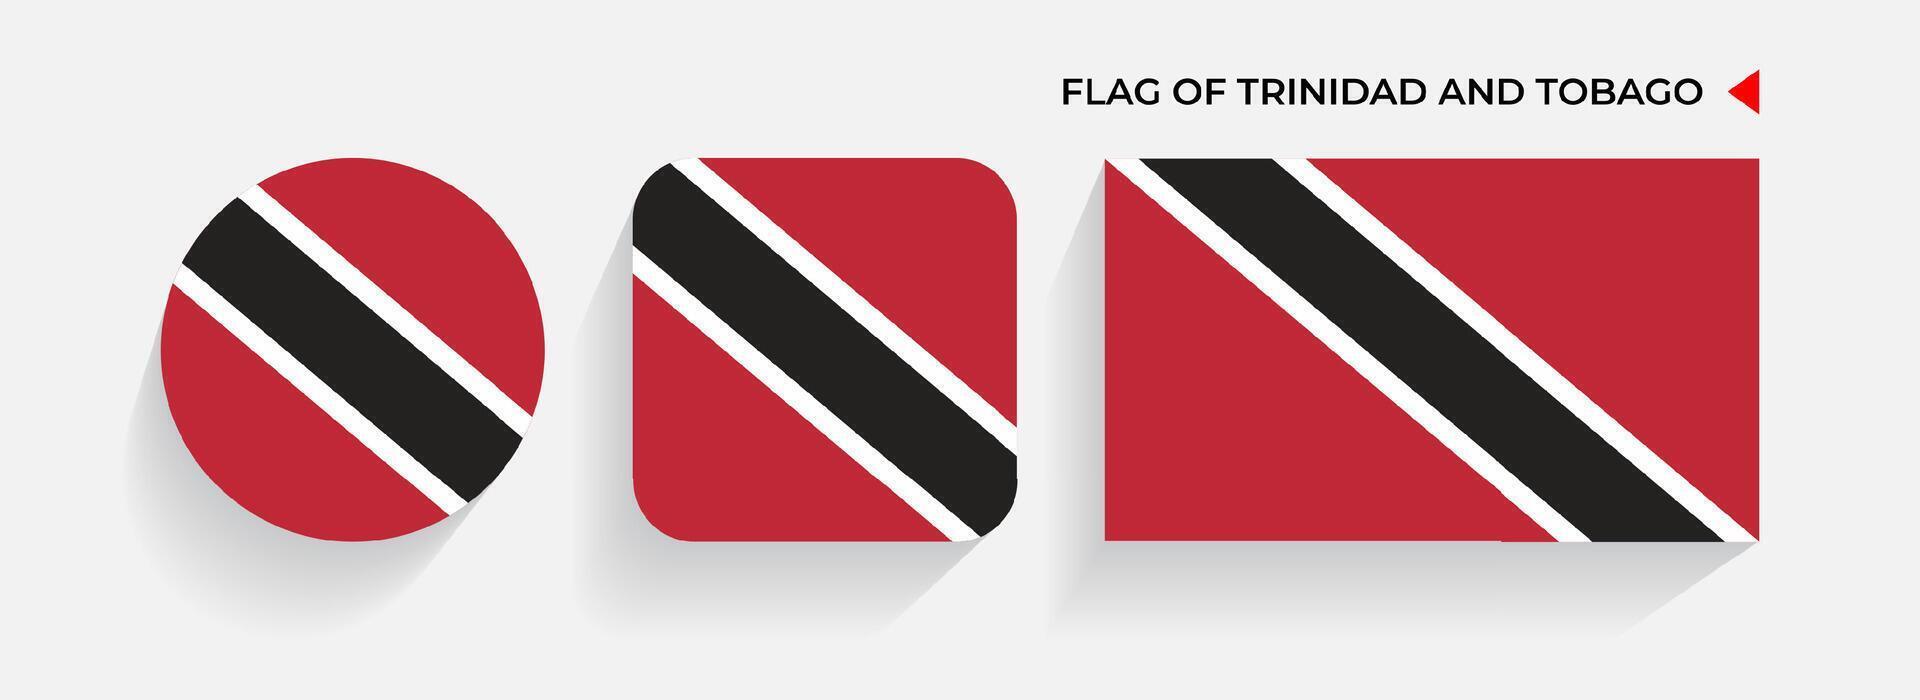 trinidad och tobago flaggor anordnad i runda, fyrkant och rektangulär former vektor